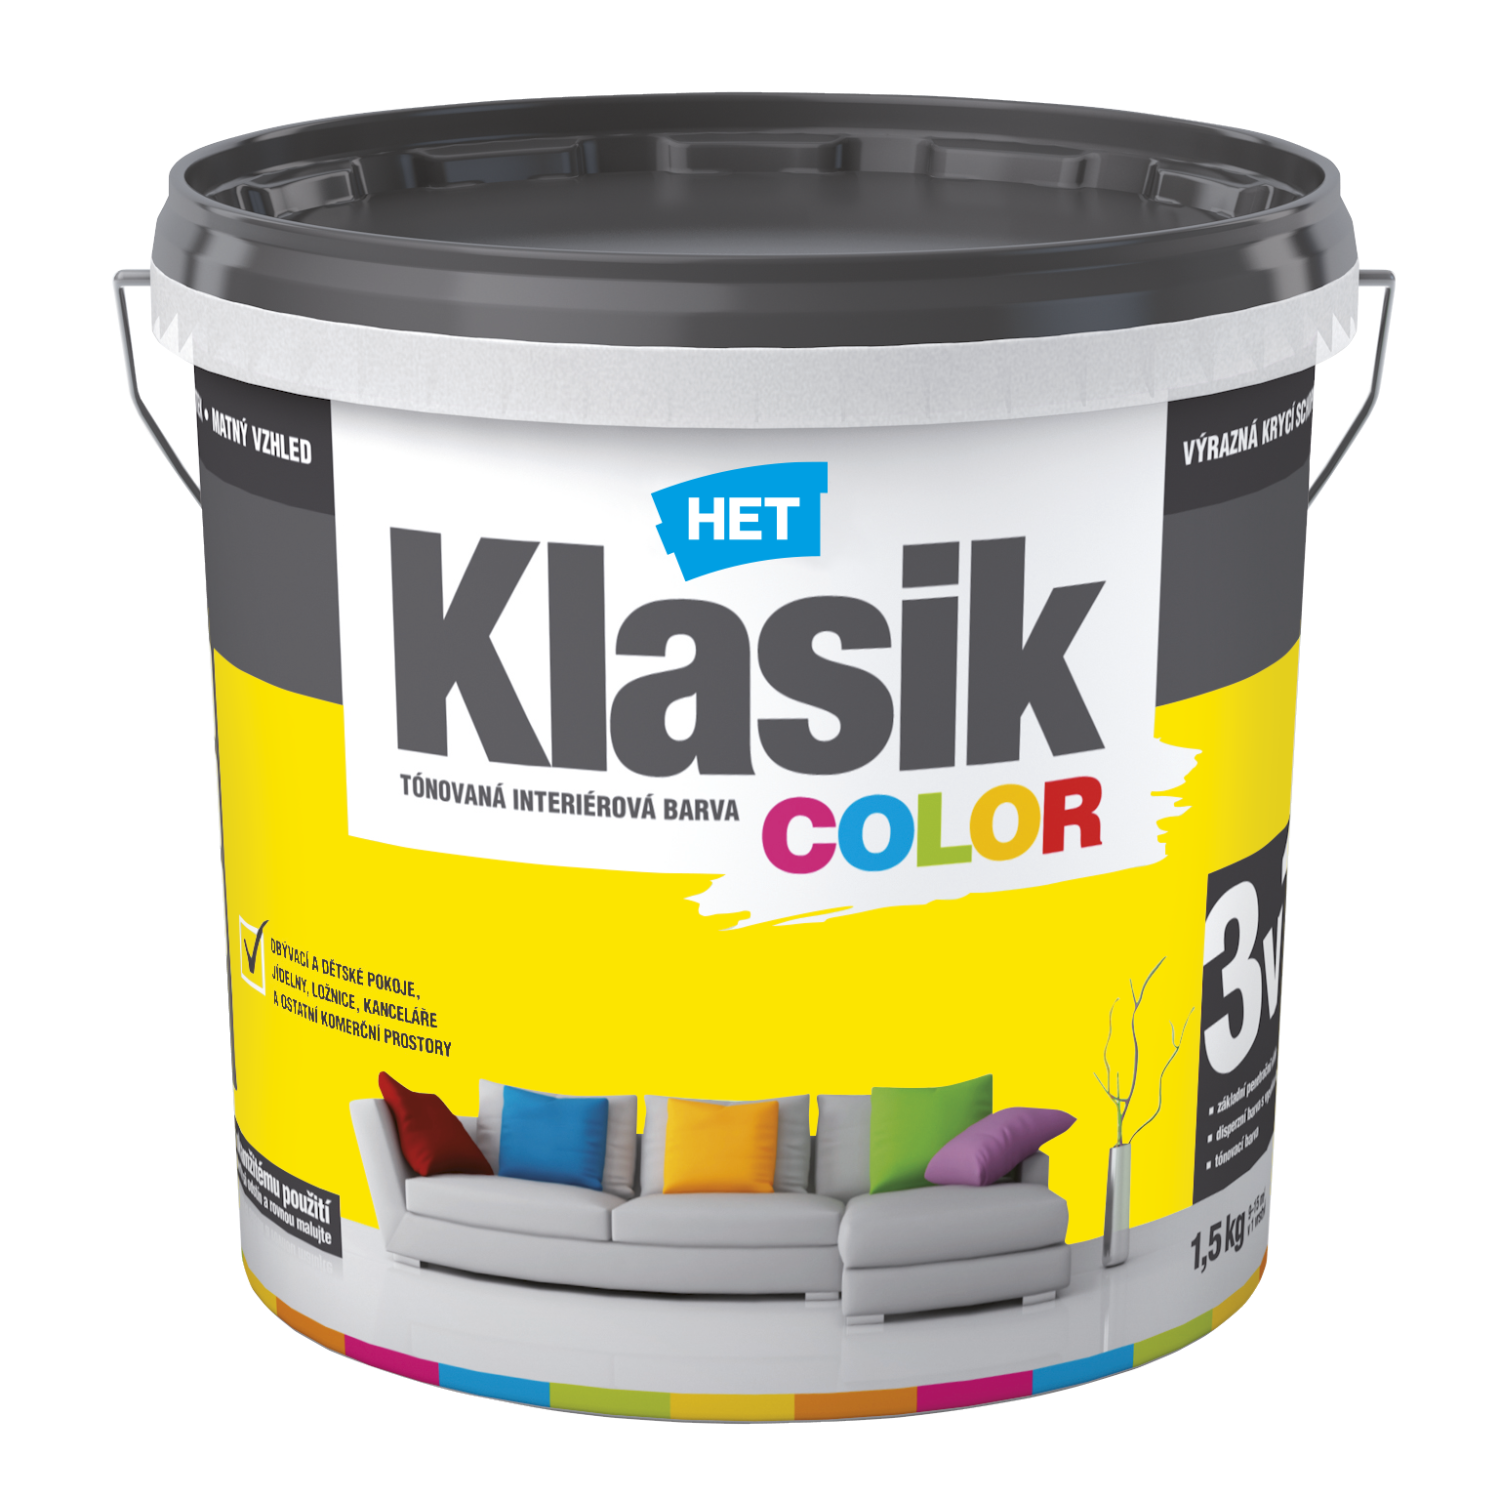 HET Klasik COLOR tónovaná interiérová akrylátová disperzná oteruvzdorná farba 1,5 kg, KC0618 - žltý citrónový